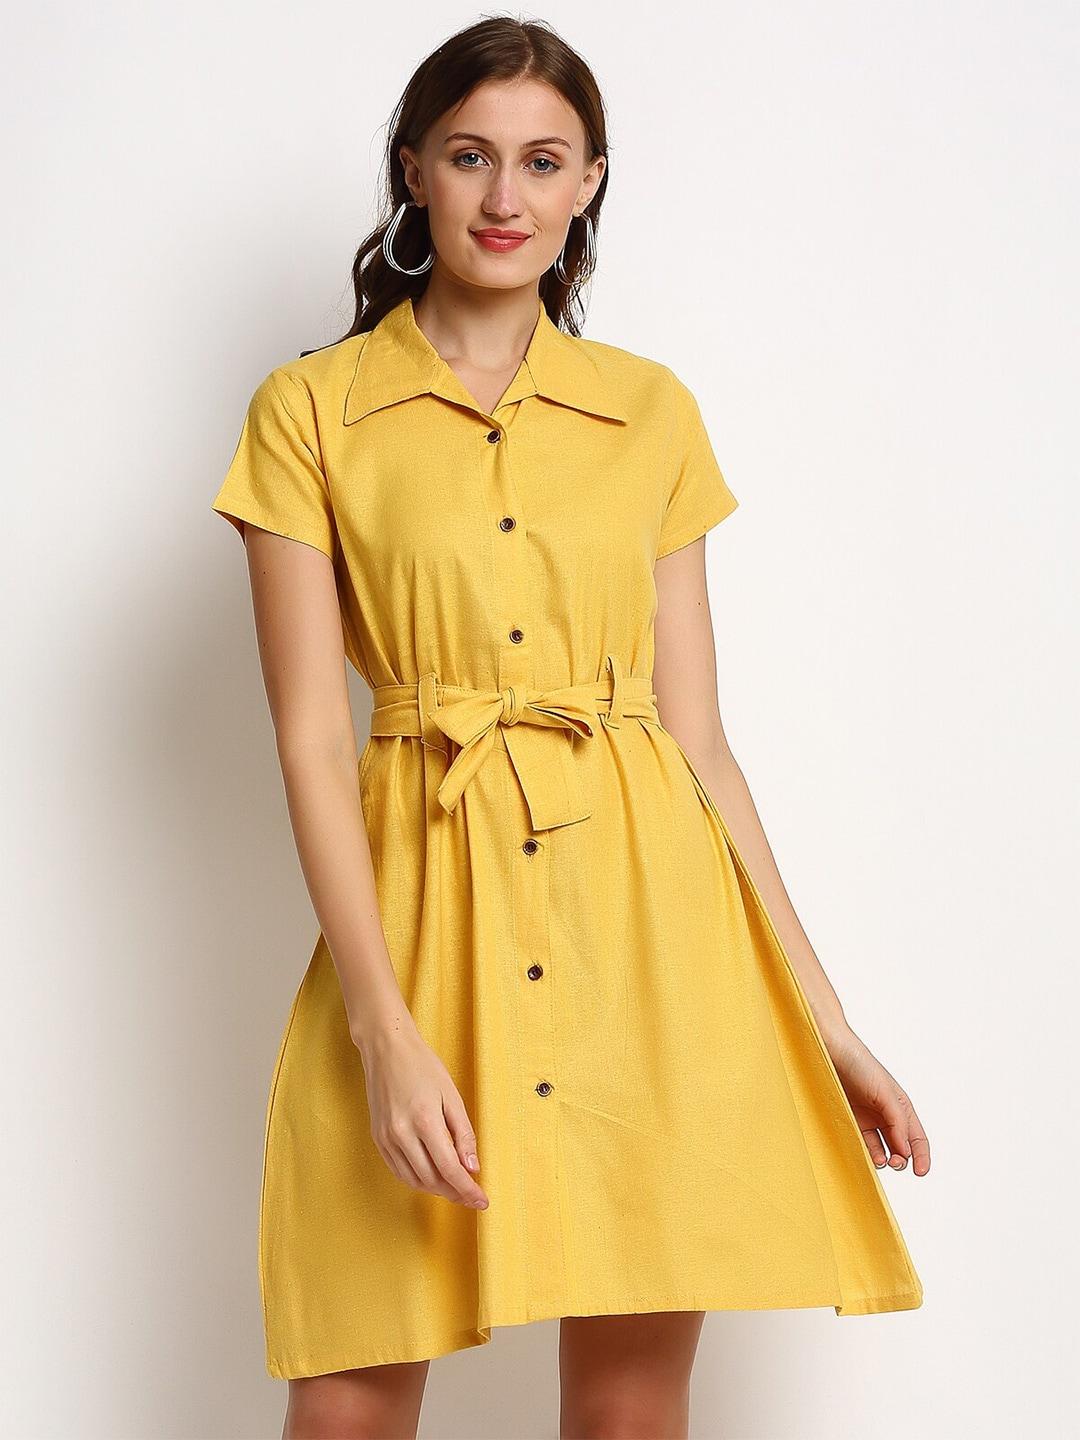 Enchanted Drapes Yellow Shirt Dress